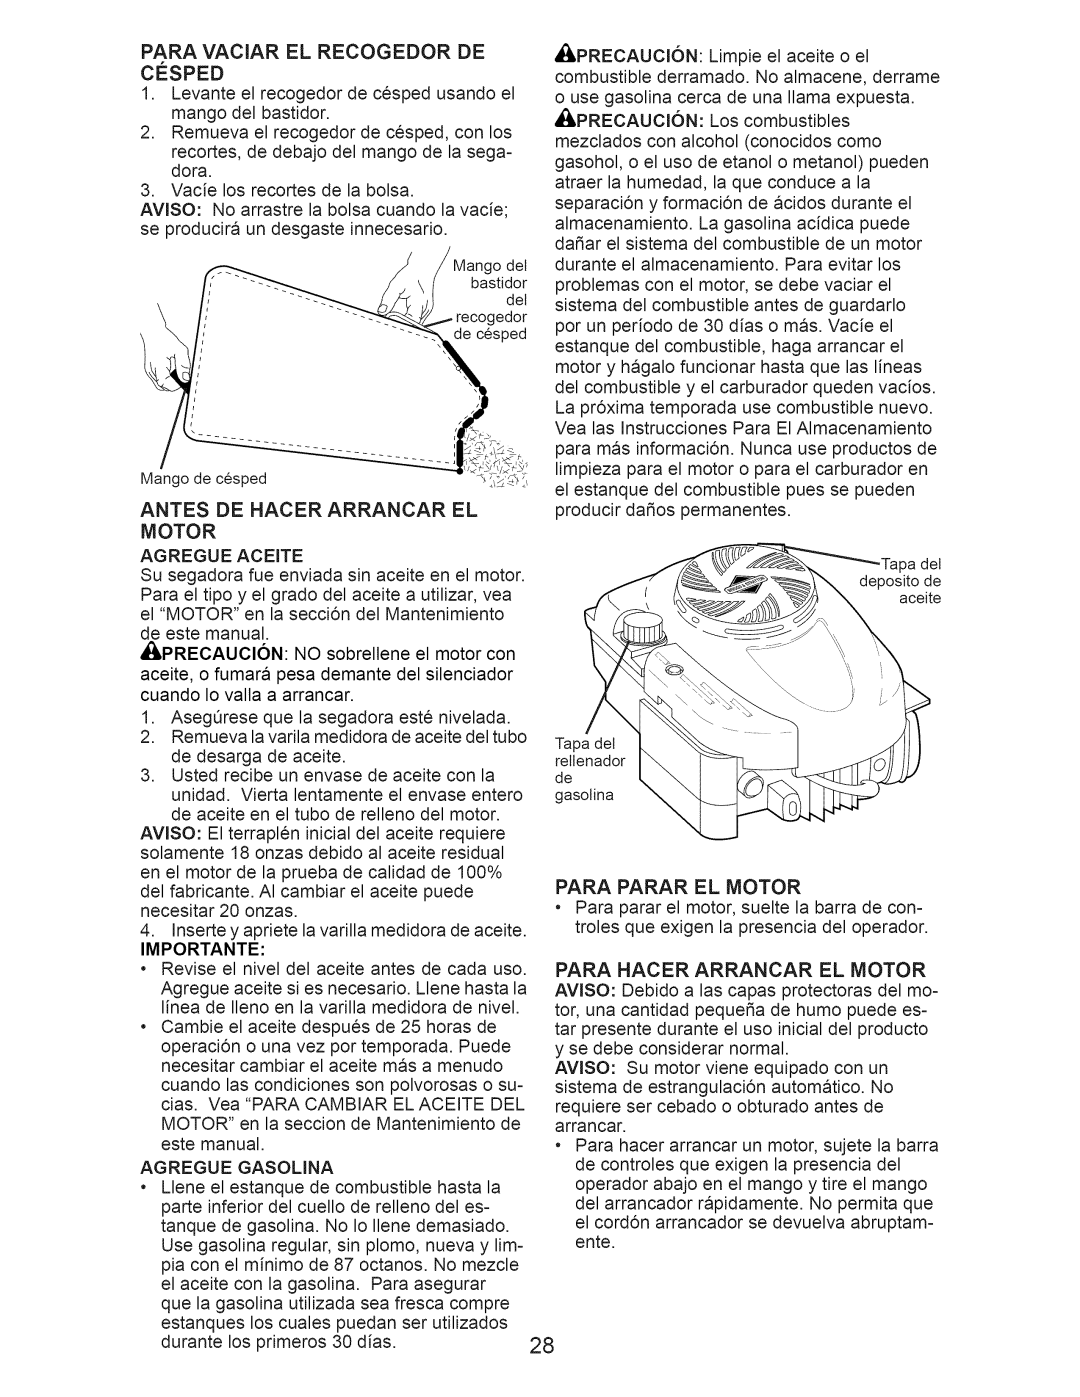 Craftsman 917.376390 manual Antes De Hacer Arrancar El Motor, Para Parar El Motor, Importante 